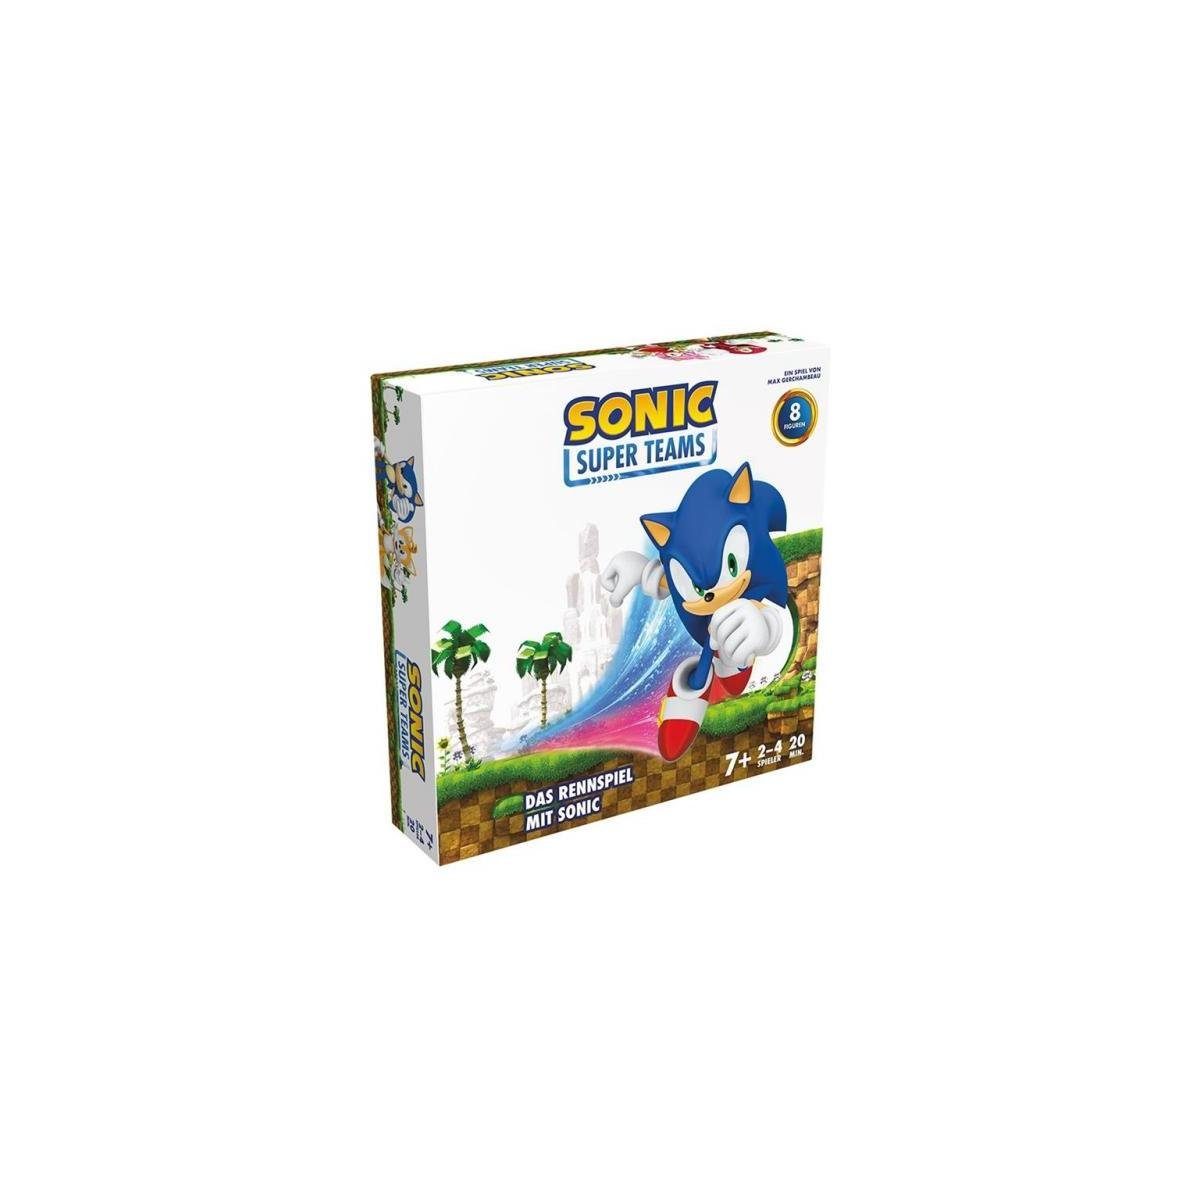 Zygomatic Spiel, Familienspiel ZYGD0013 - Sonic Super Teams, Brettspiel, für 2-4..., Familienspiel